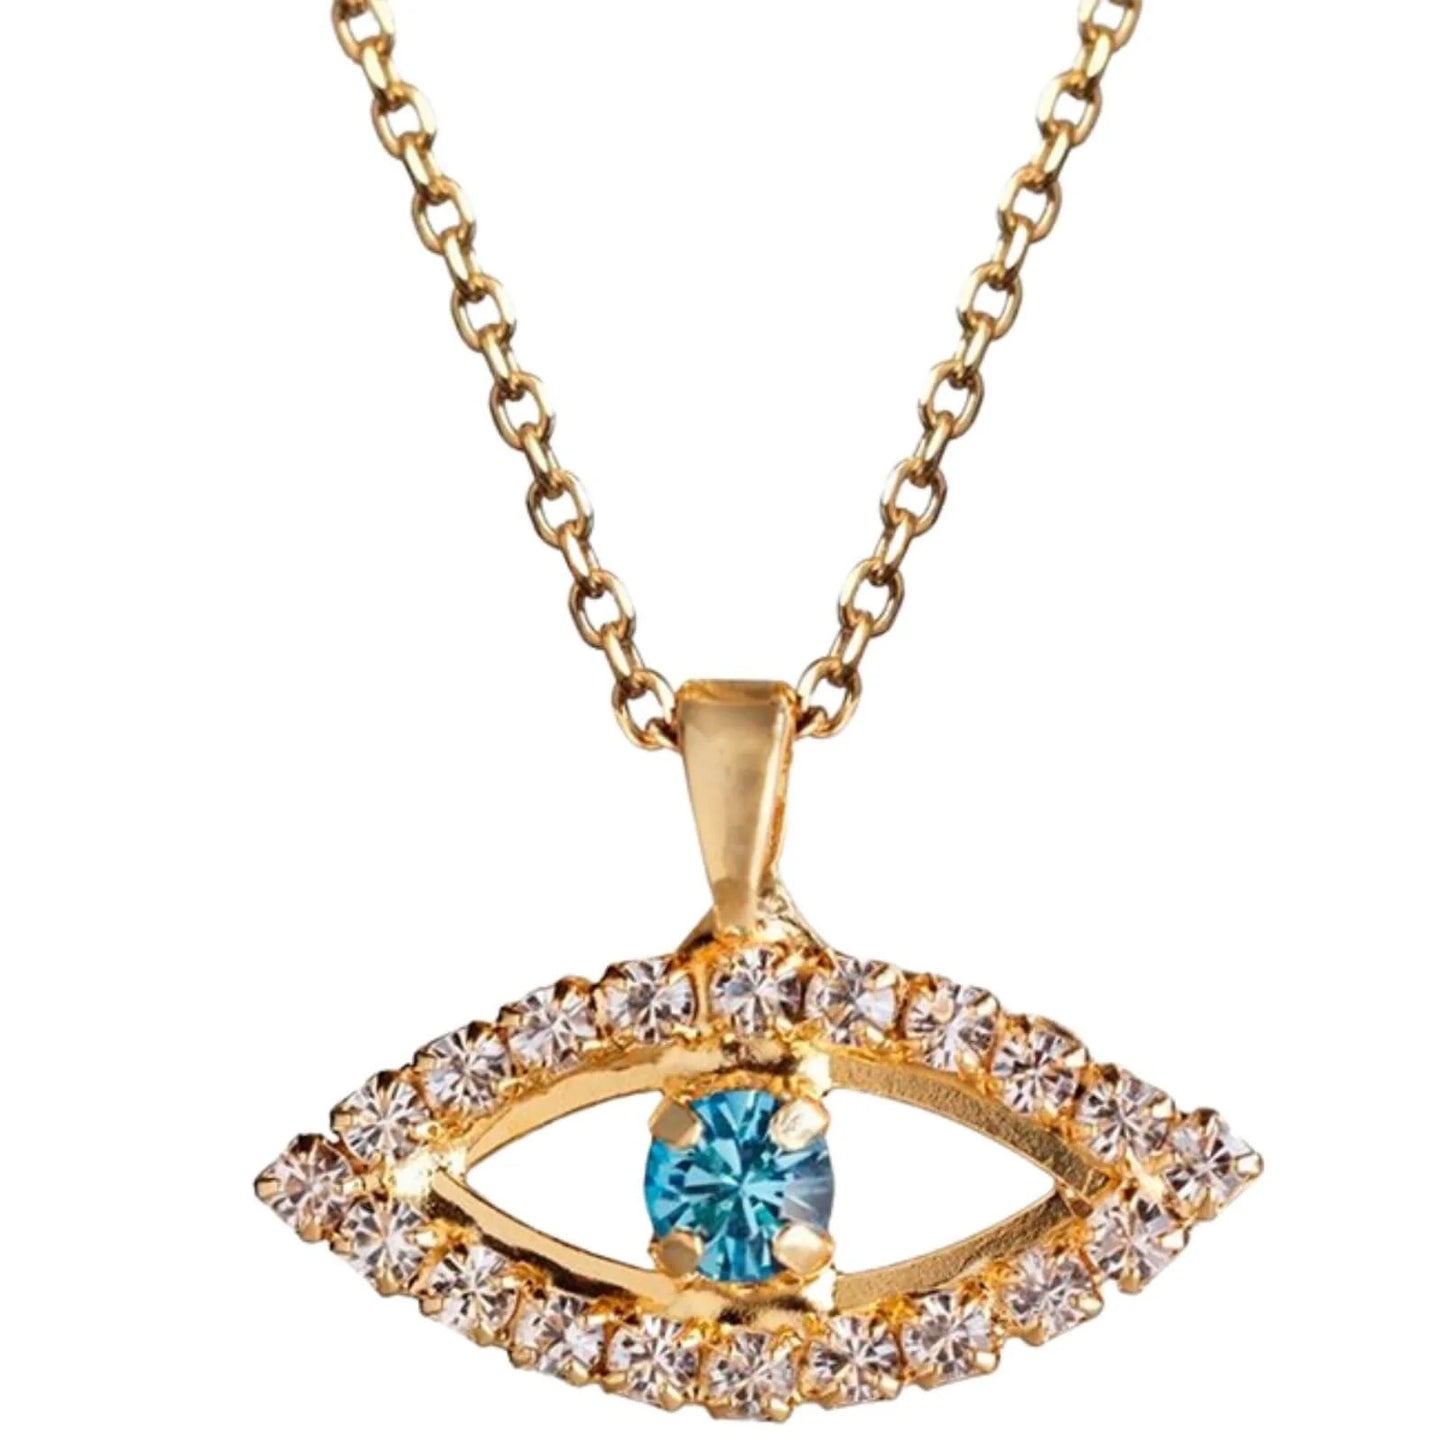 Greek Eye Necklace Gold/Crystal/Aquamarine